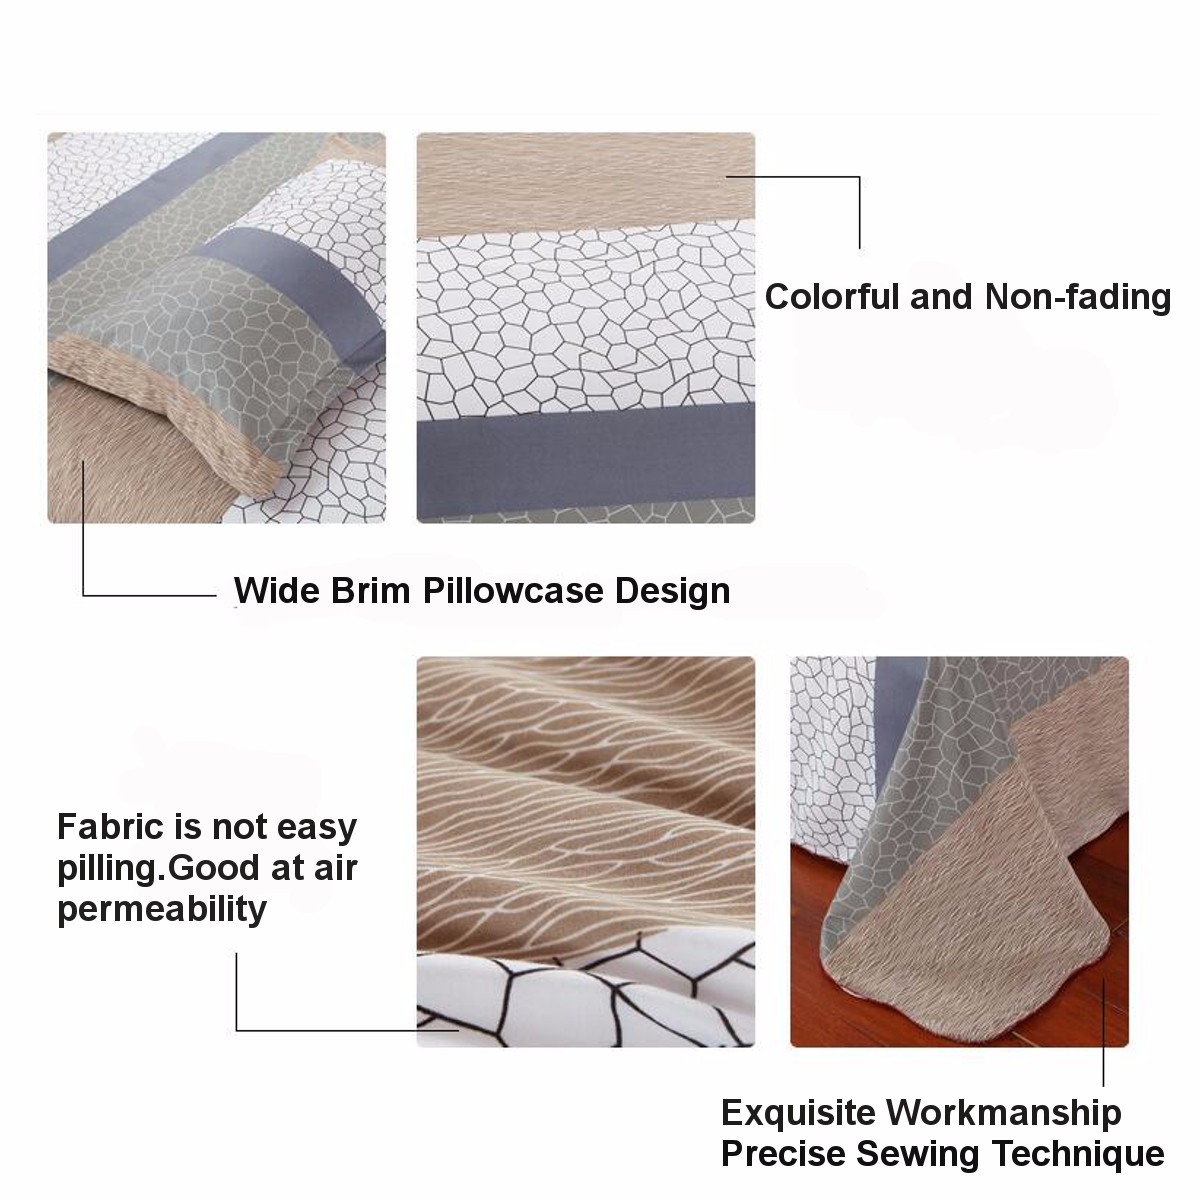 15m18m-4-pcs-Cotton-Bedding-Set-Pillowcase-Quilt-Duvet-Cover-Flat-Sheet-Elegent-Noble-Bedding-1120973